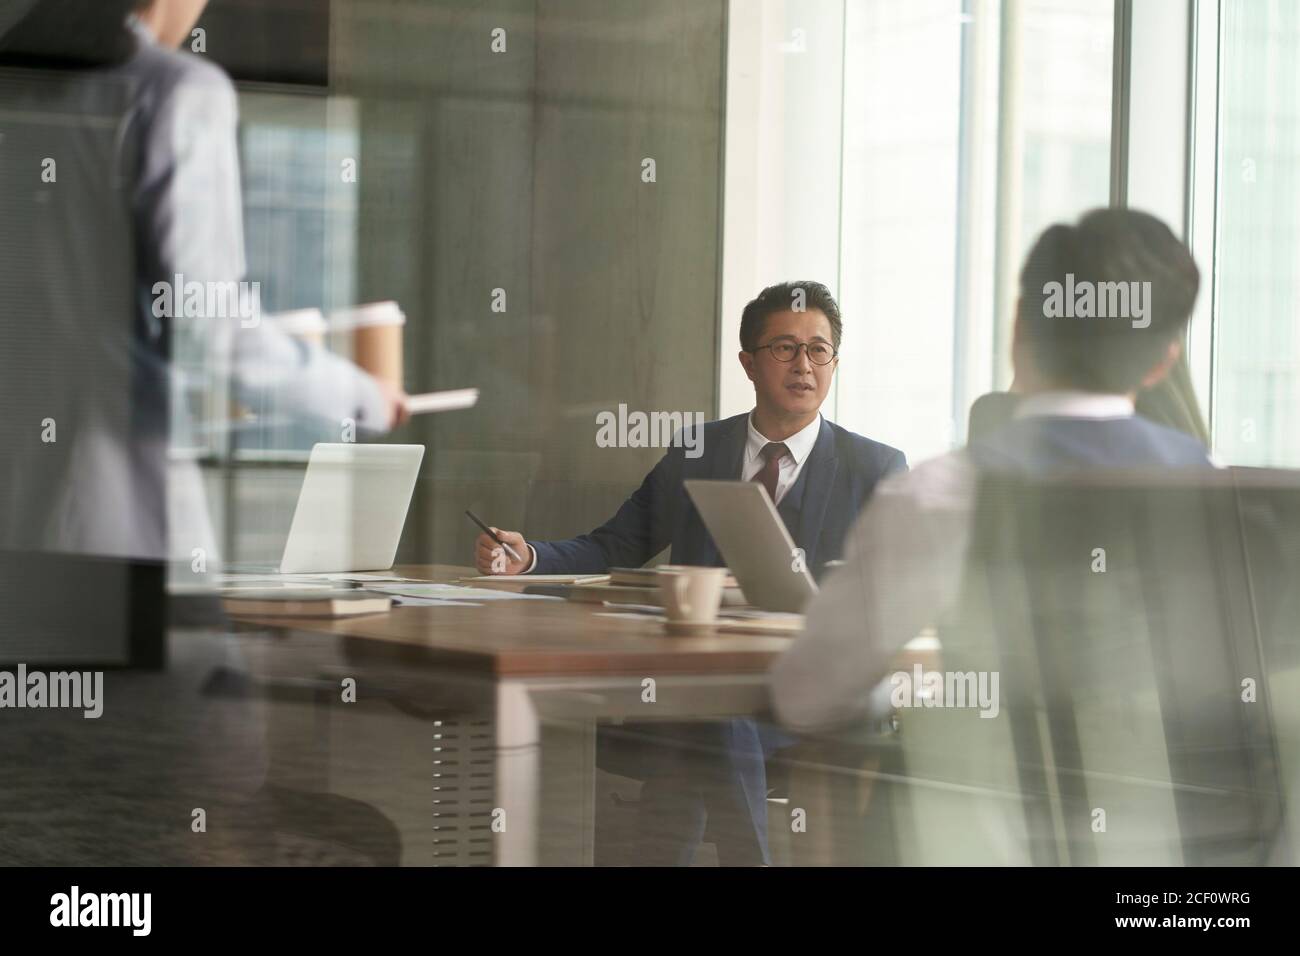 photo à travers le verre d'un groupe de gens d'affaires asiatiques ayant un discussion dans la salle de réunion Banque D'Images